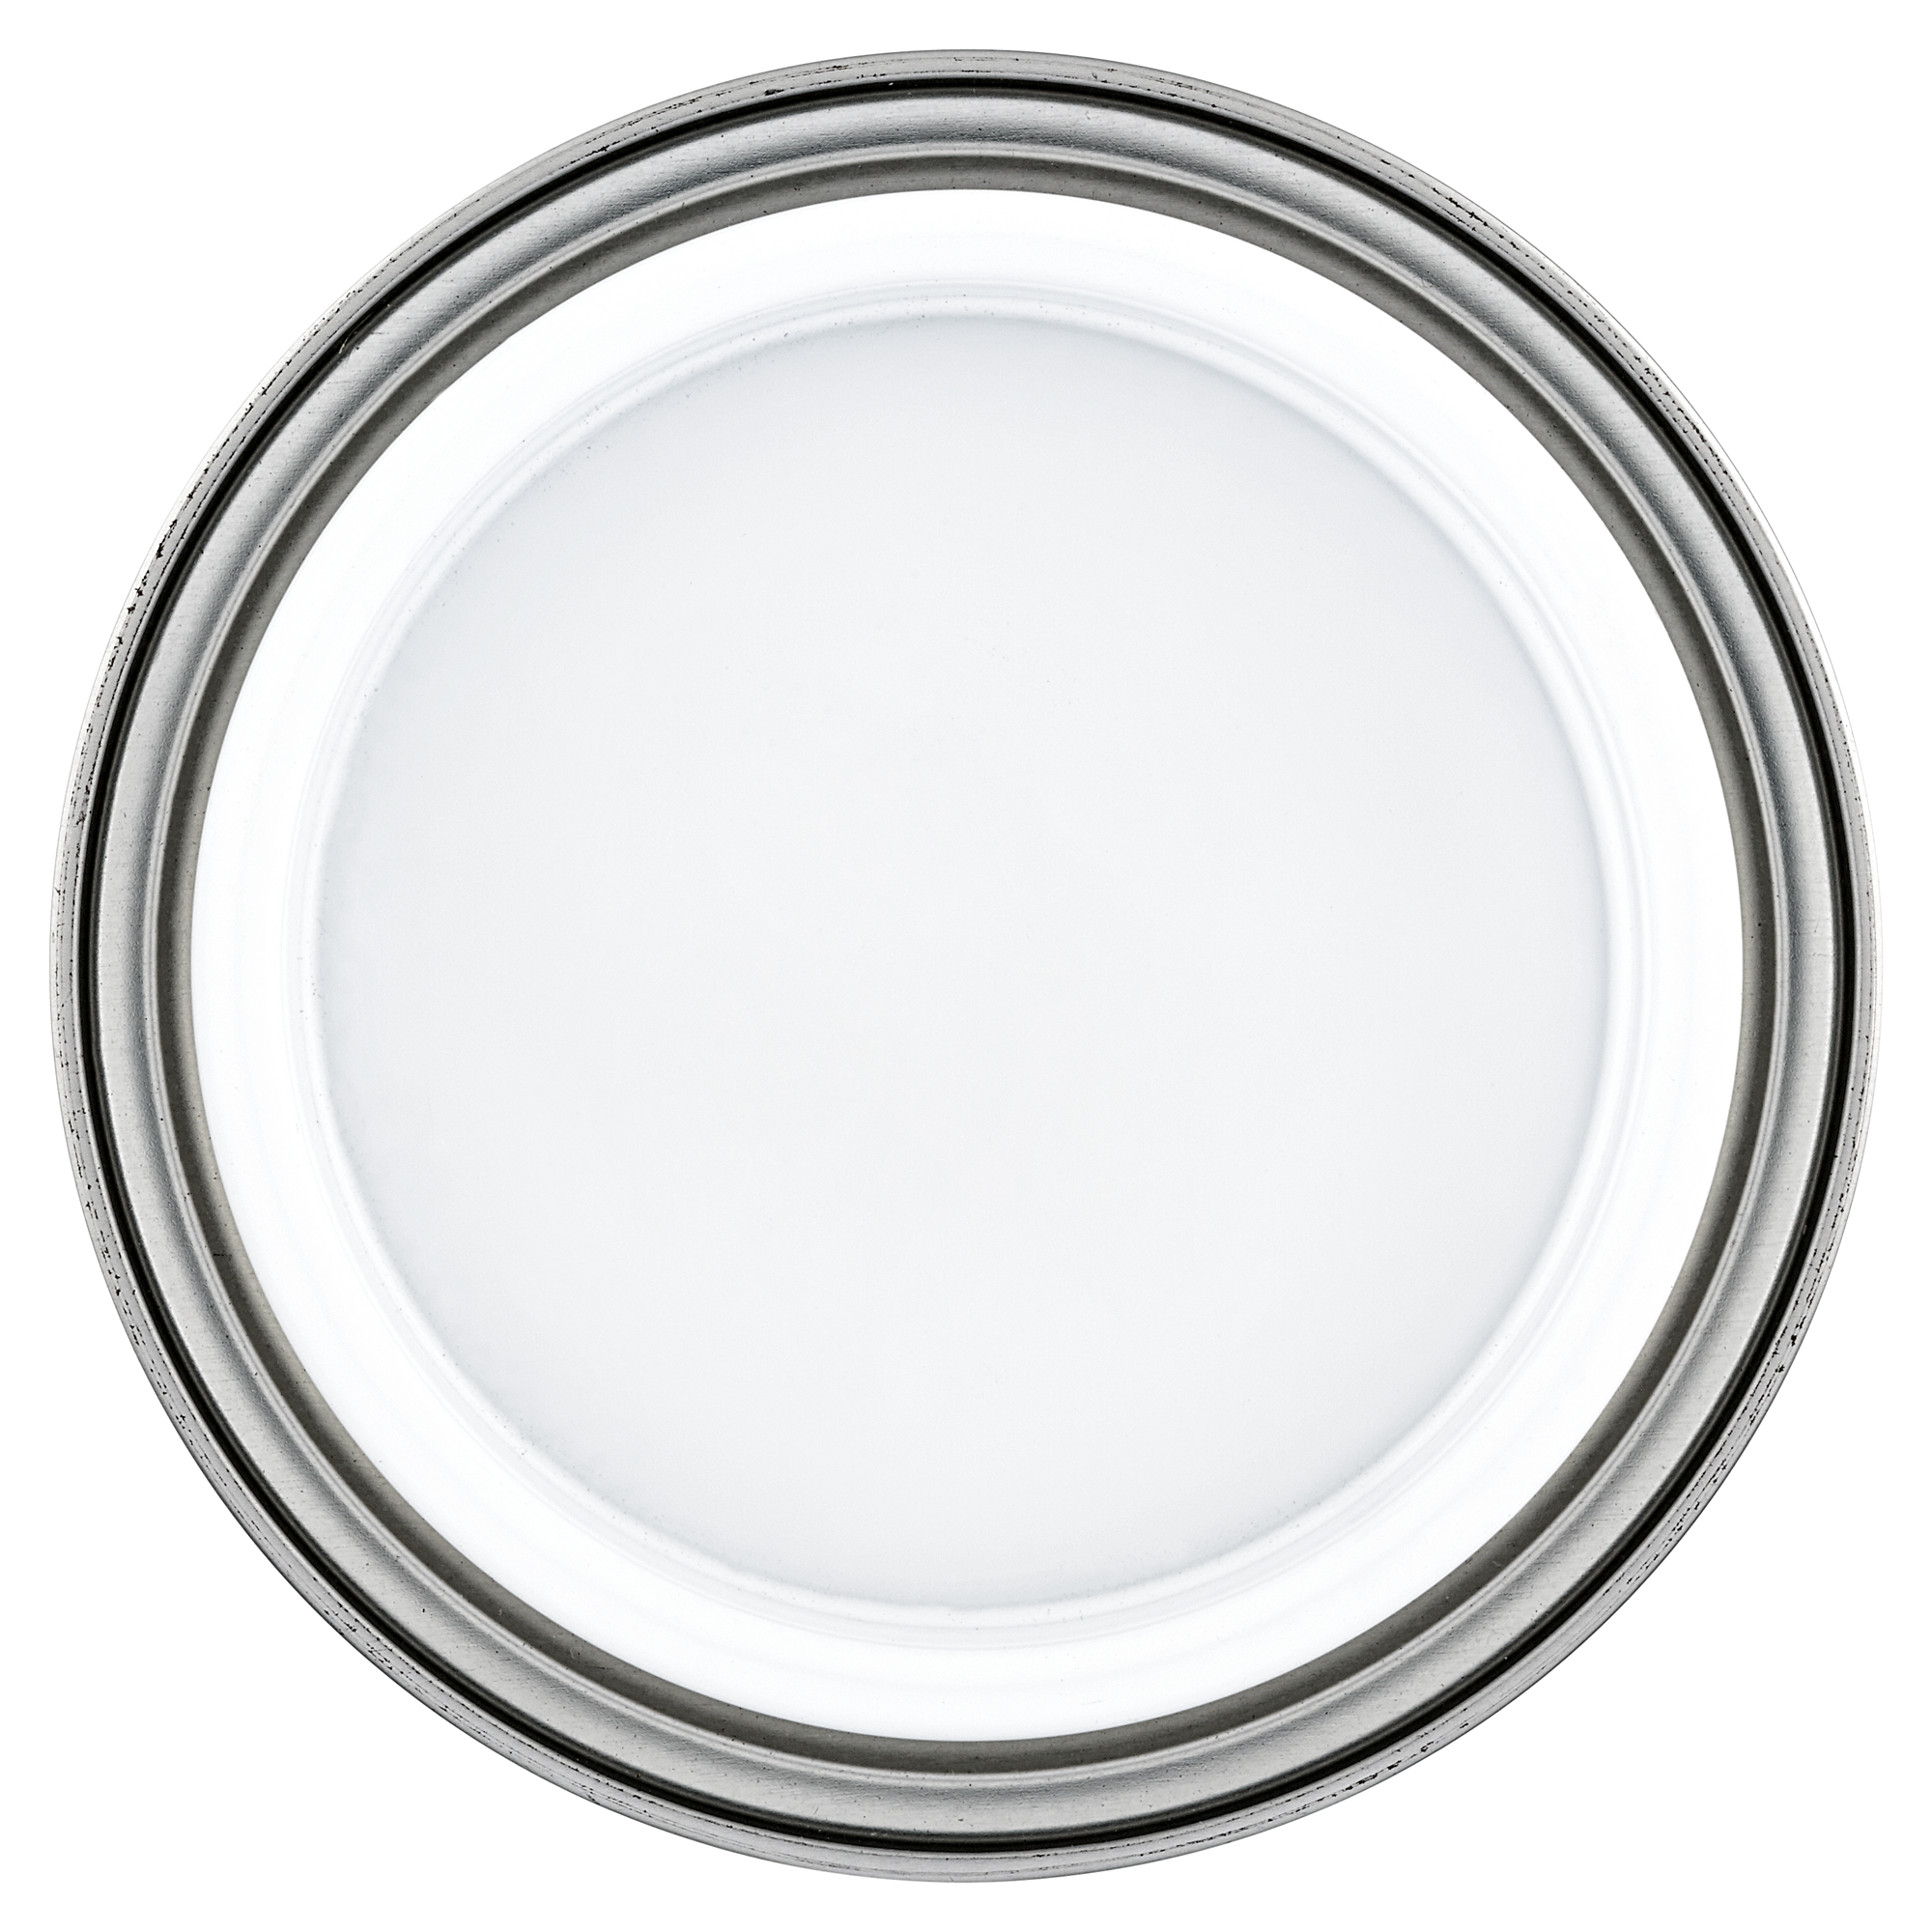 2in1 Fenster- und Türenlack weiß glänzend 375 ml + product picture